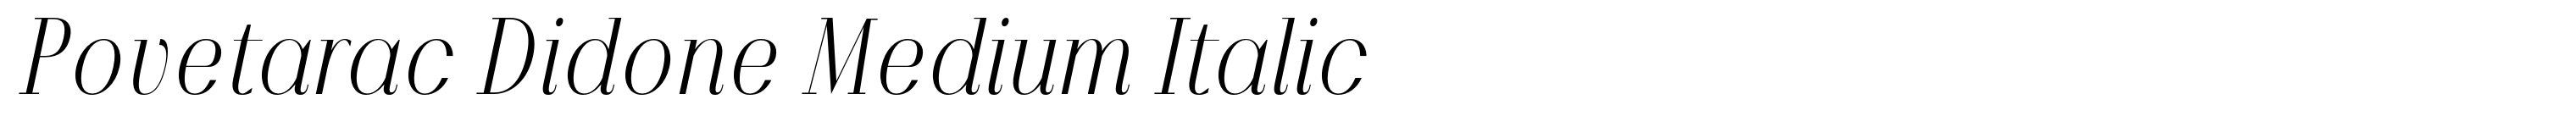 Povetarac Didone Medium Italic